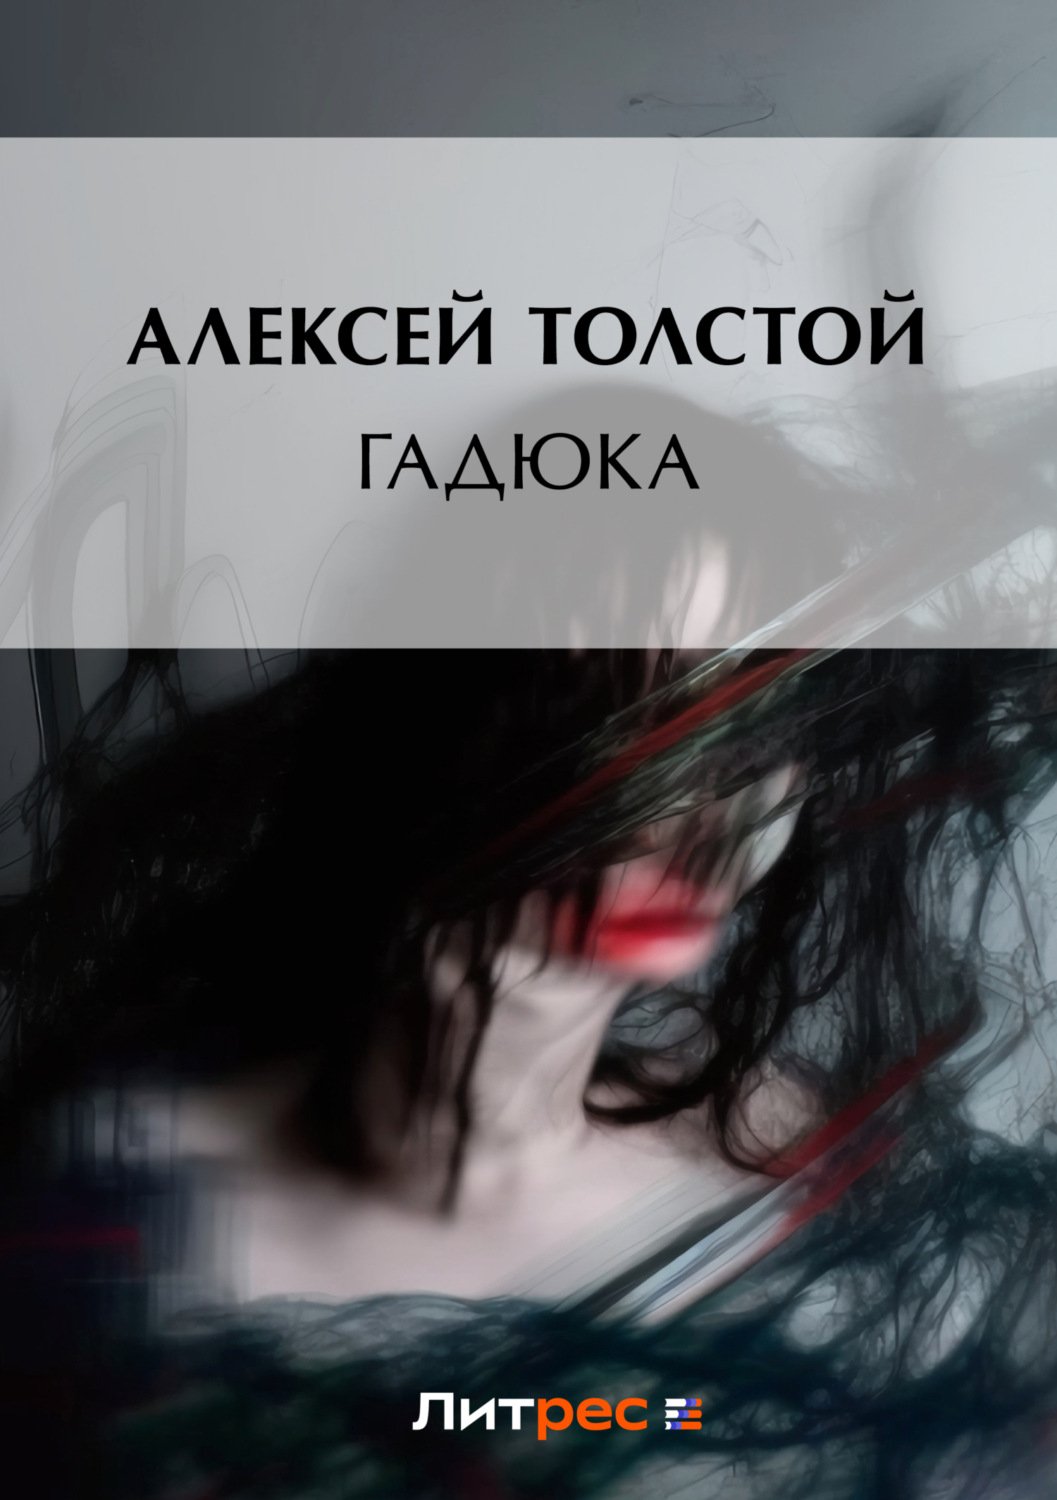 обложка Толстой Алексей